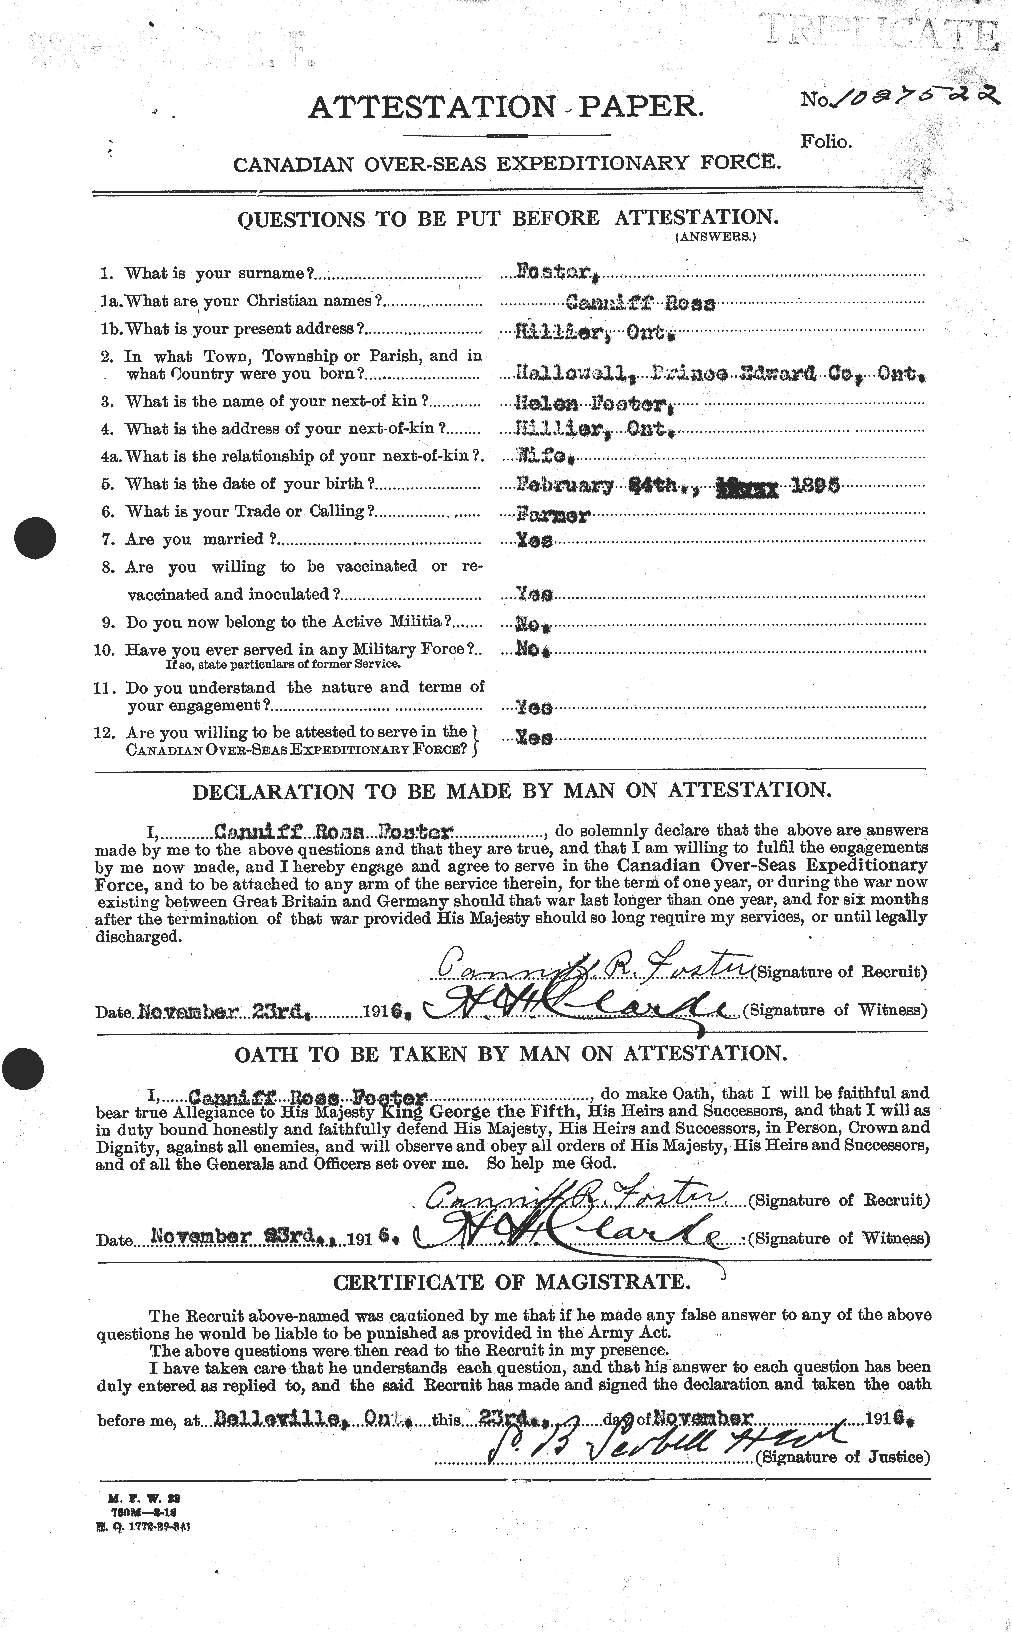 Dossiers du Personnel de la Première Guerre mondiale - CEC 330495a